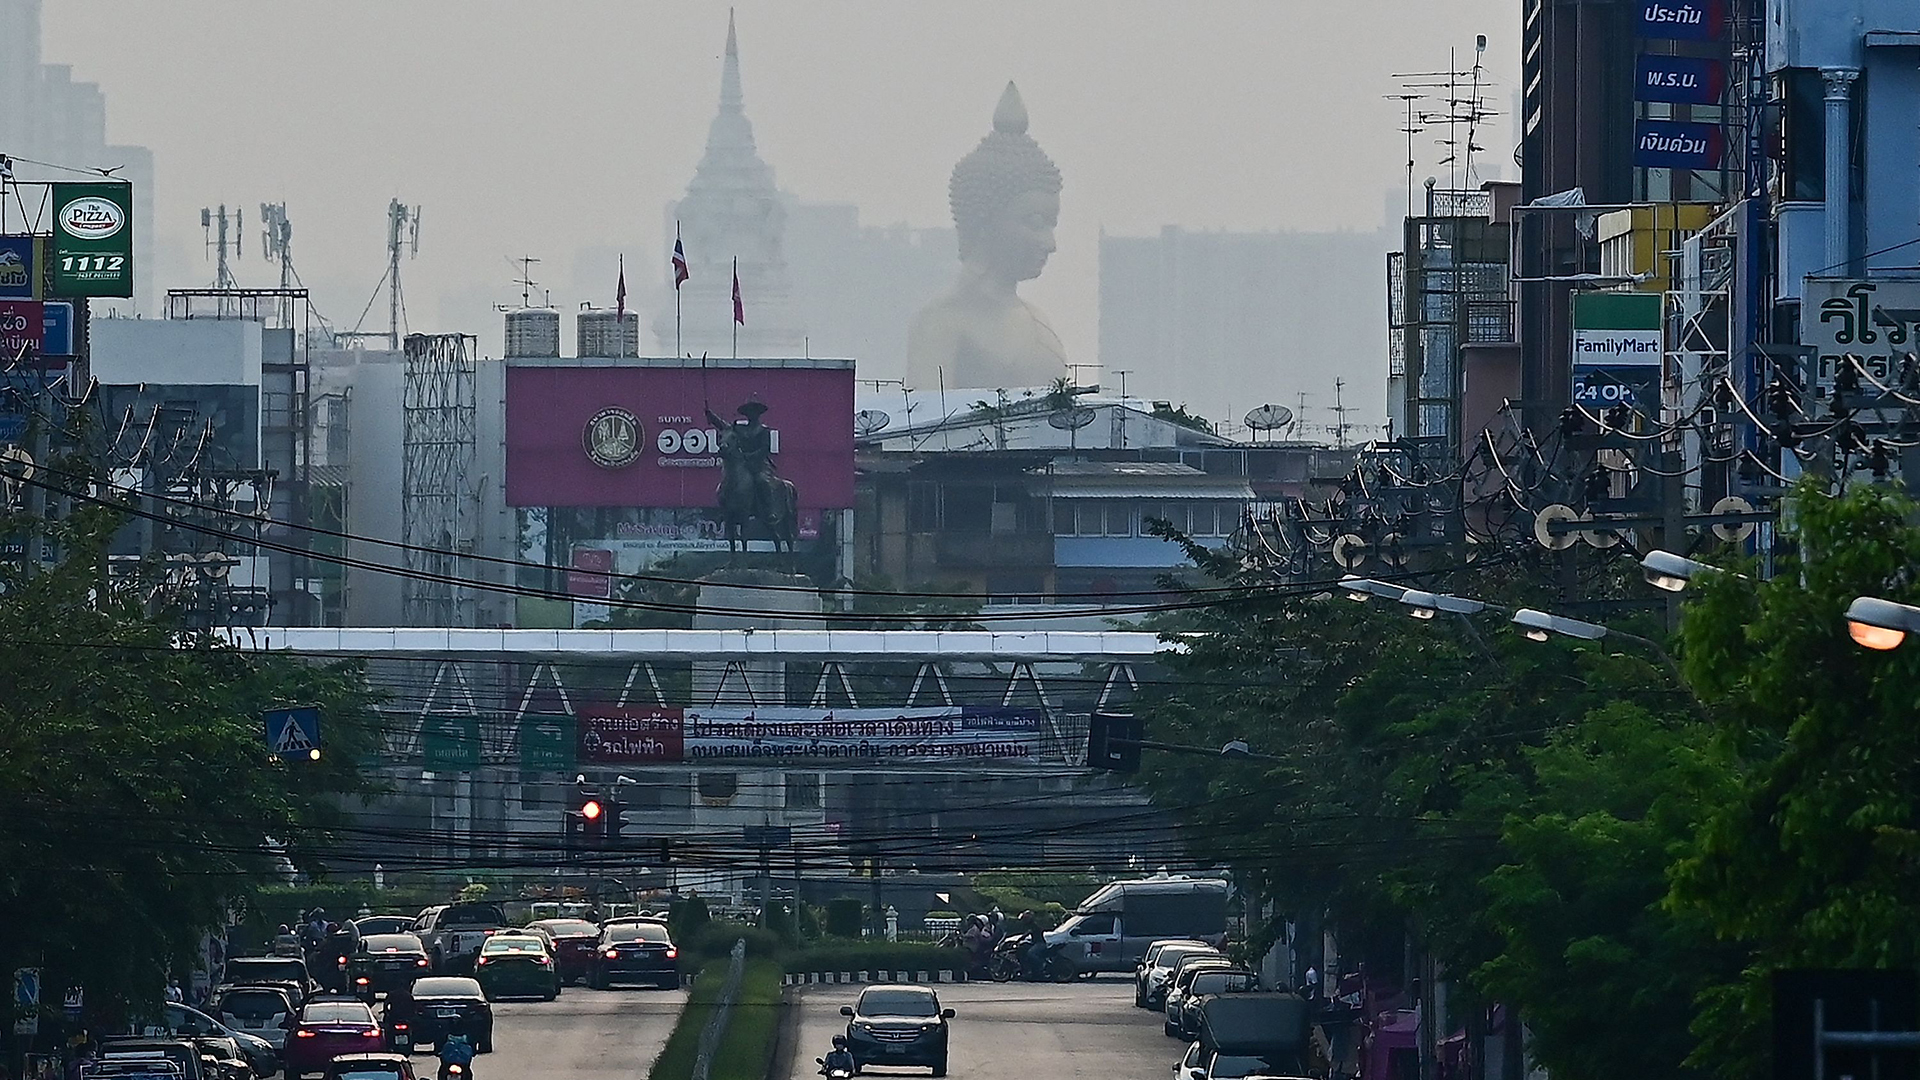 Die 69 Meter hohe riesige Buddha-Statue des Tempels Wat Paknam Phasi Charoen in Bangkok (Thailand) ist inmitten des Smogs zu sehen. | AFP